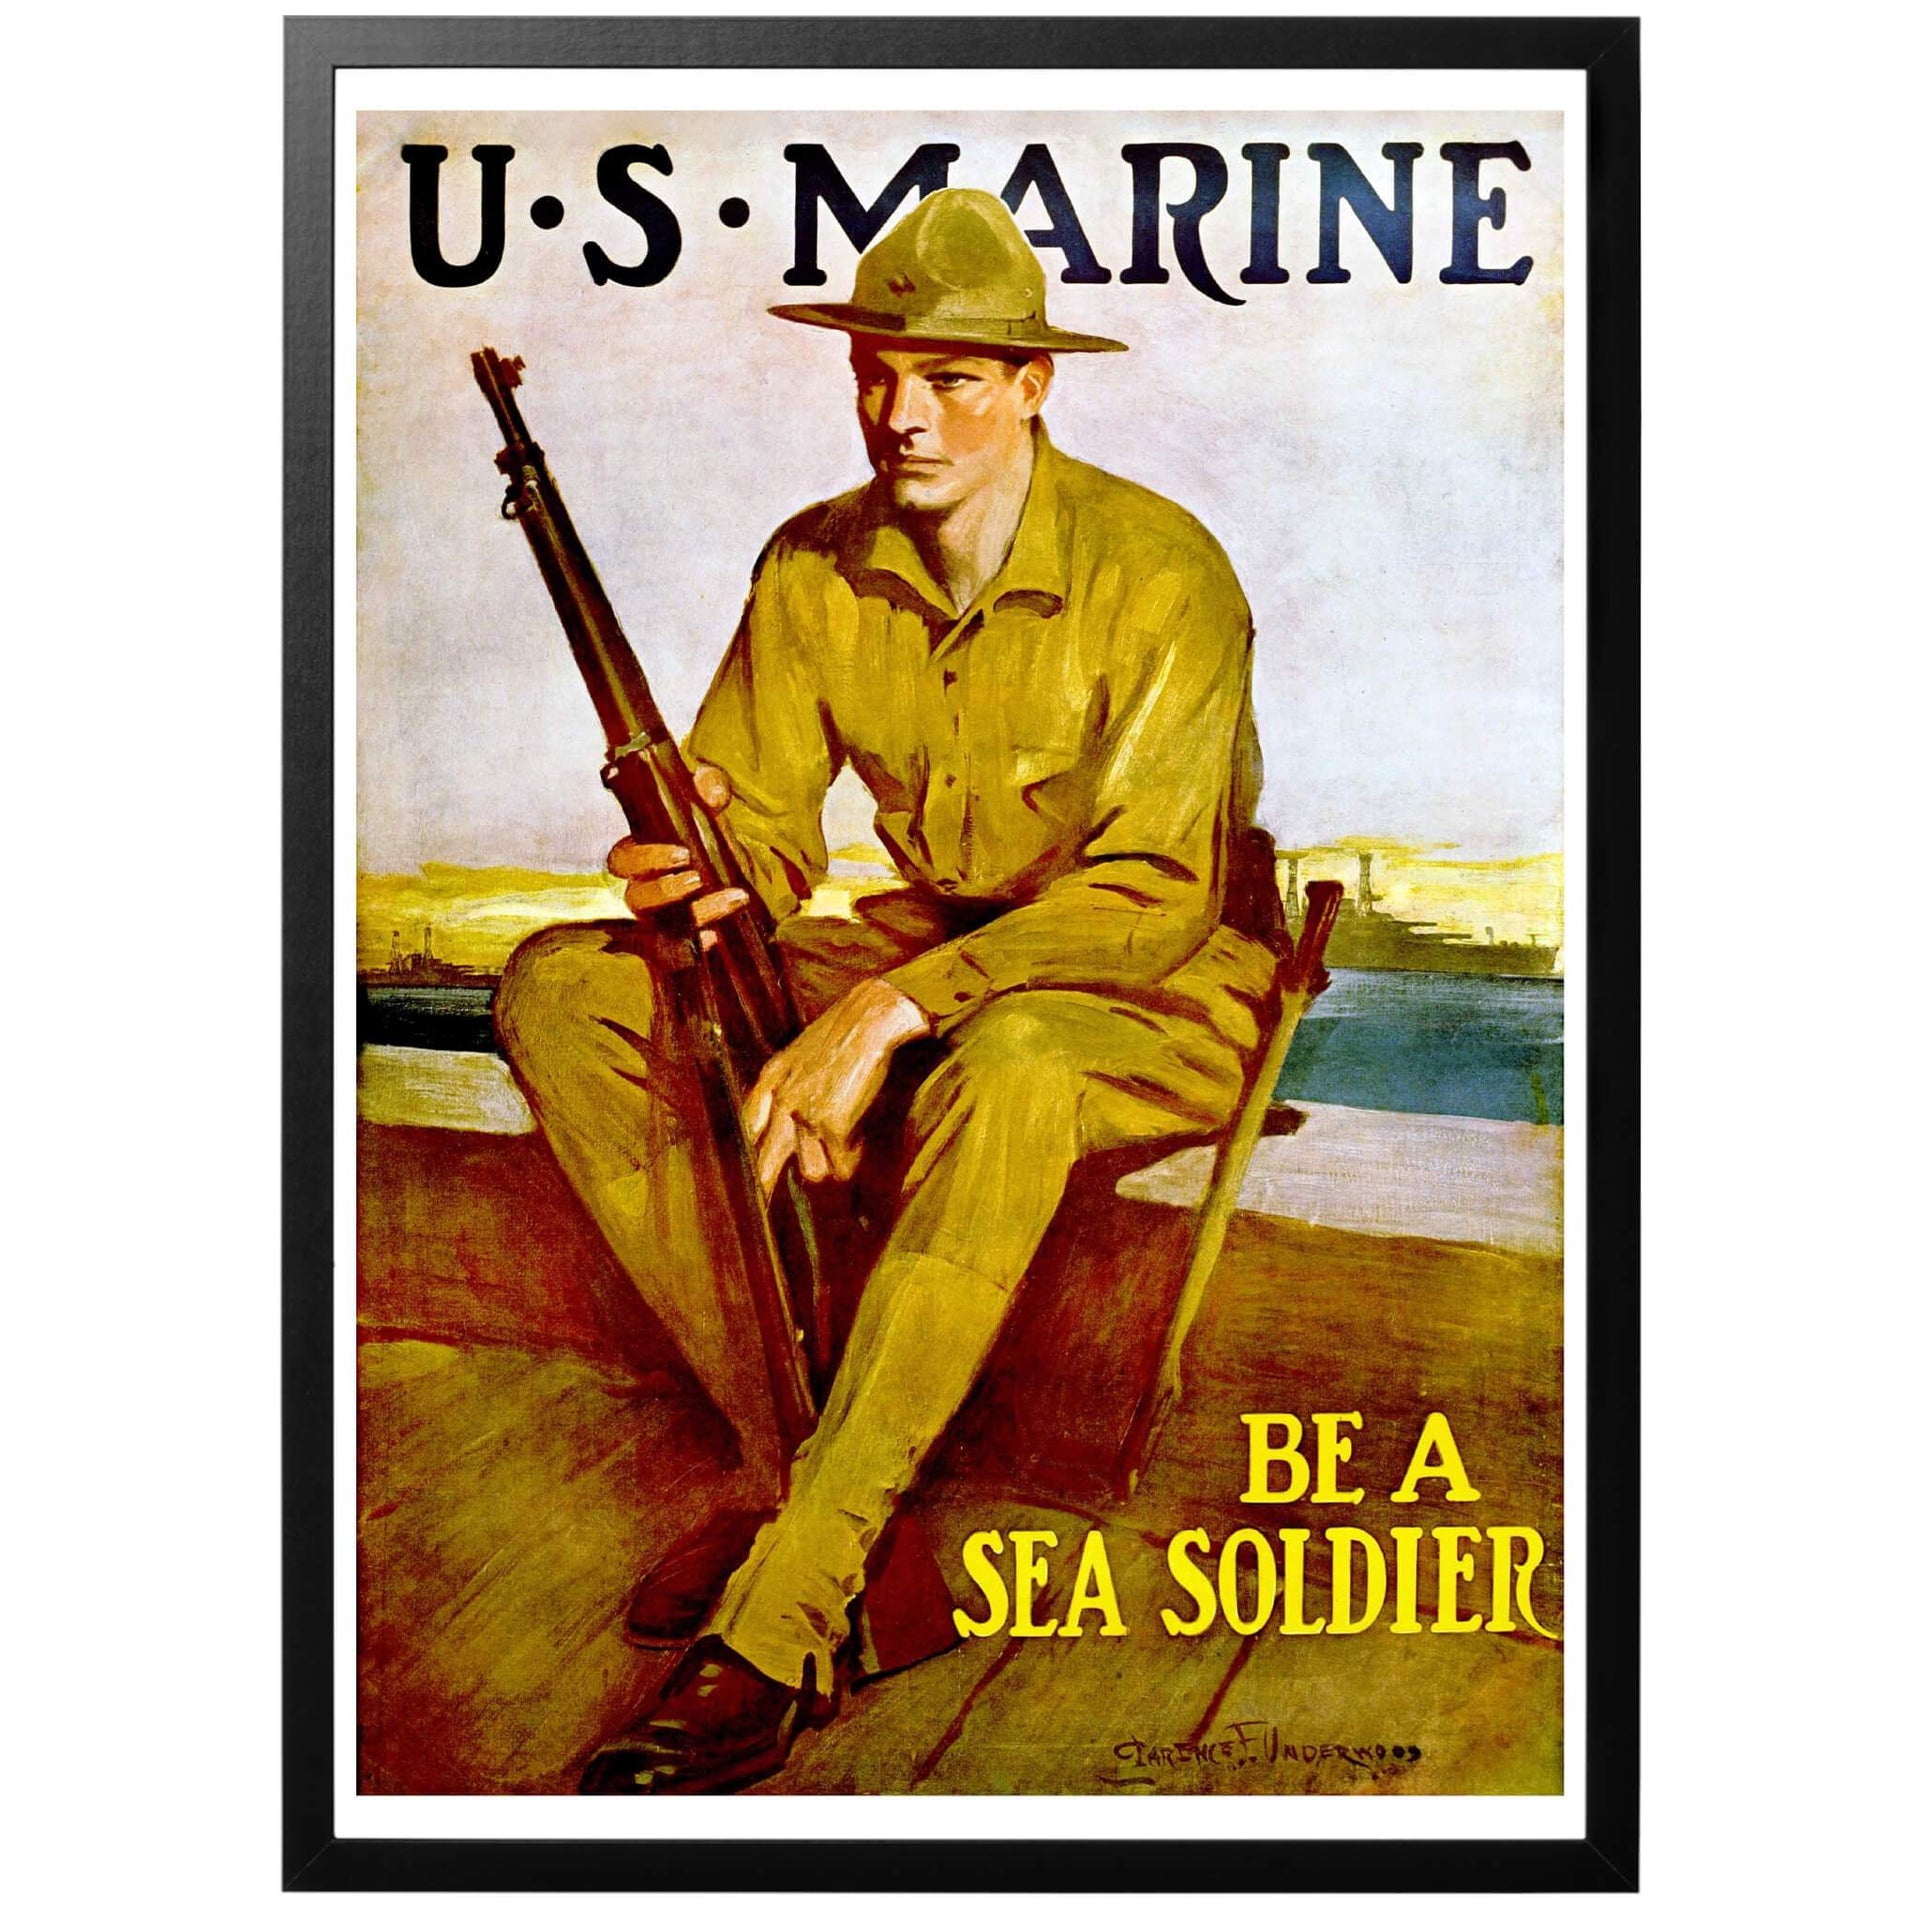 US Marines poster från första världskriget